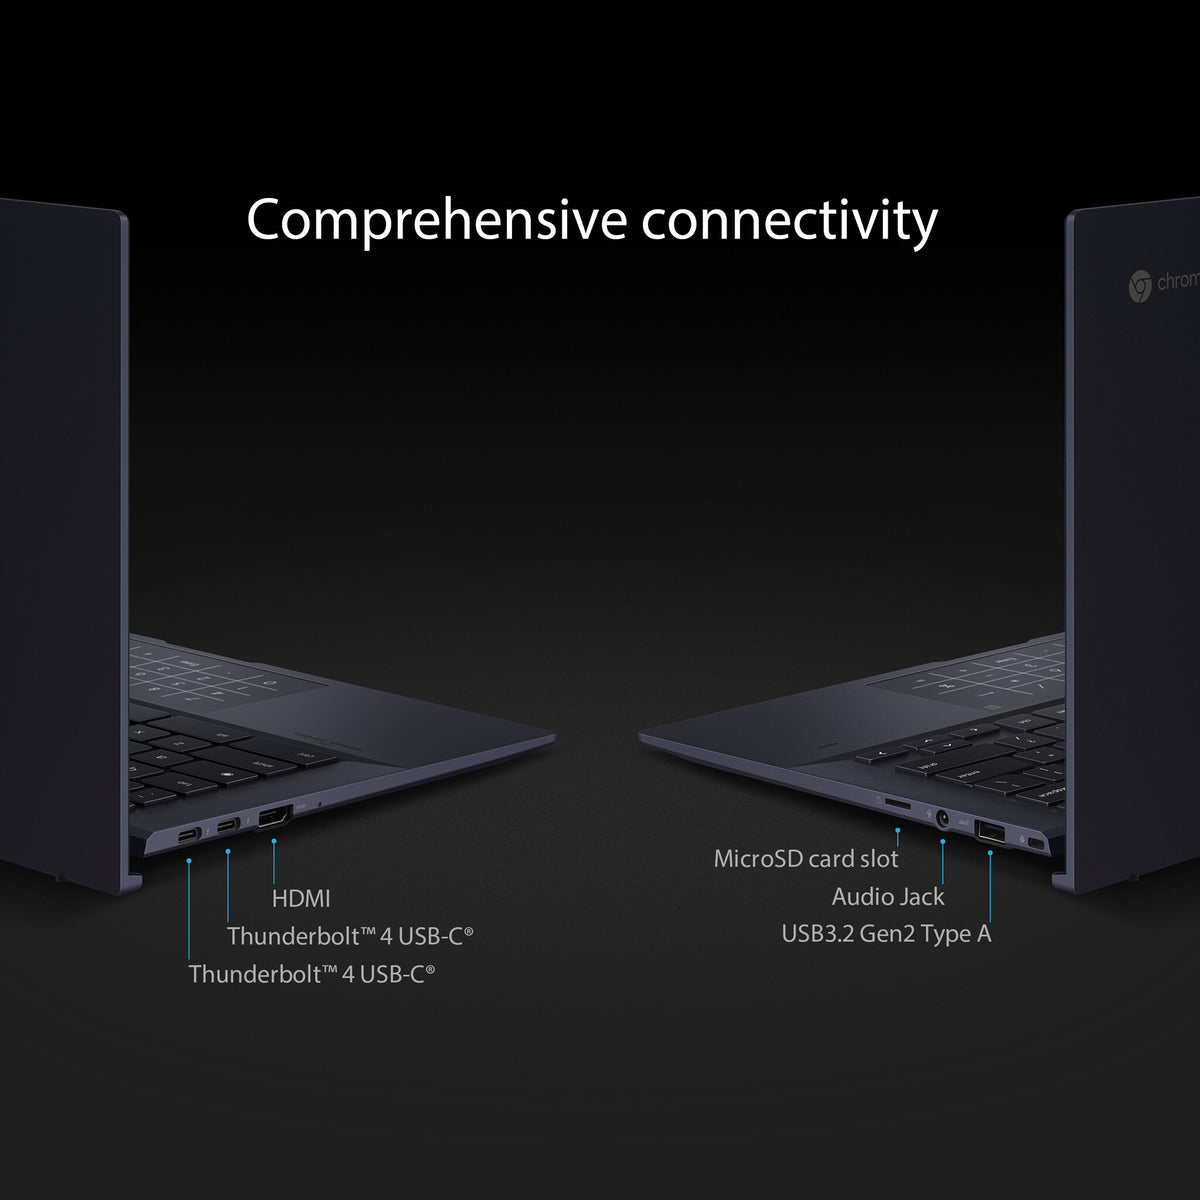 ASUS Chromebook CX9 - 35.6 cm (14&quot;) - Intel® Core™ i5-1135G7 - 8 GB LPDDR4x-SDRAM - 256 GB SSD - Wi-Fi 6 - ChromeOS - Black